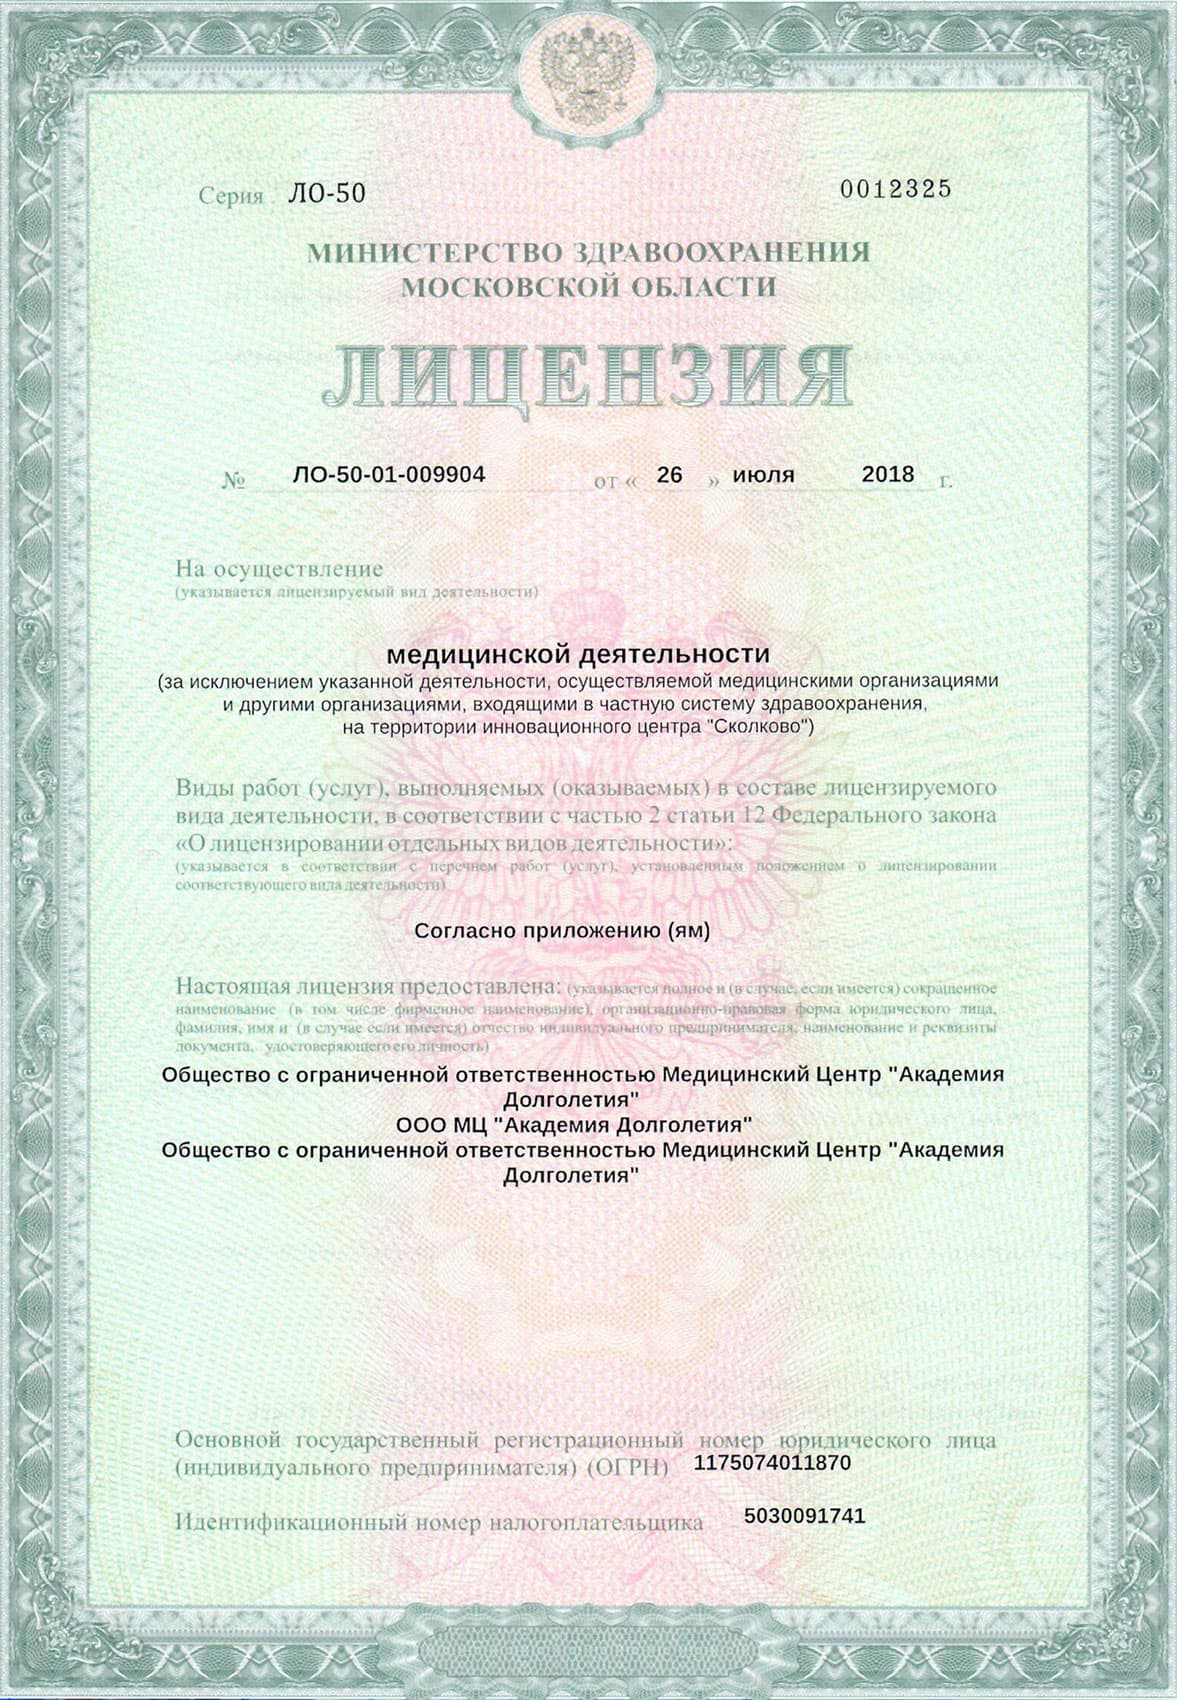 Сертификат на осуществление медицинской деятельности